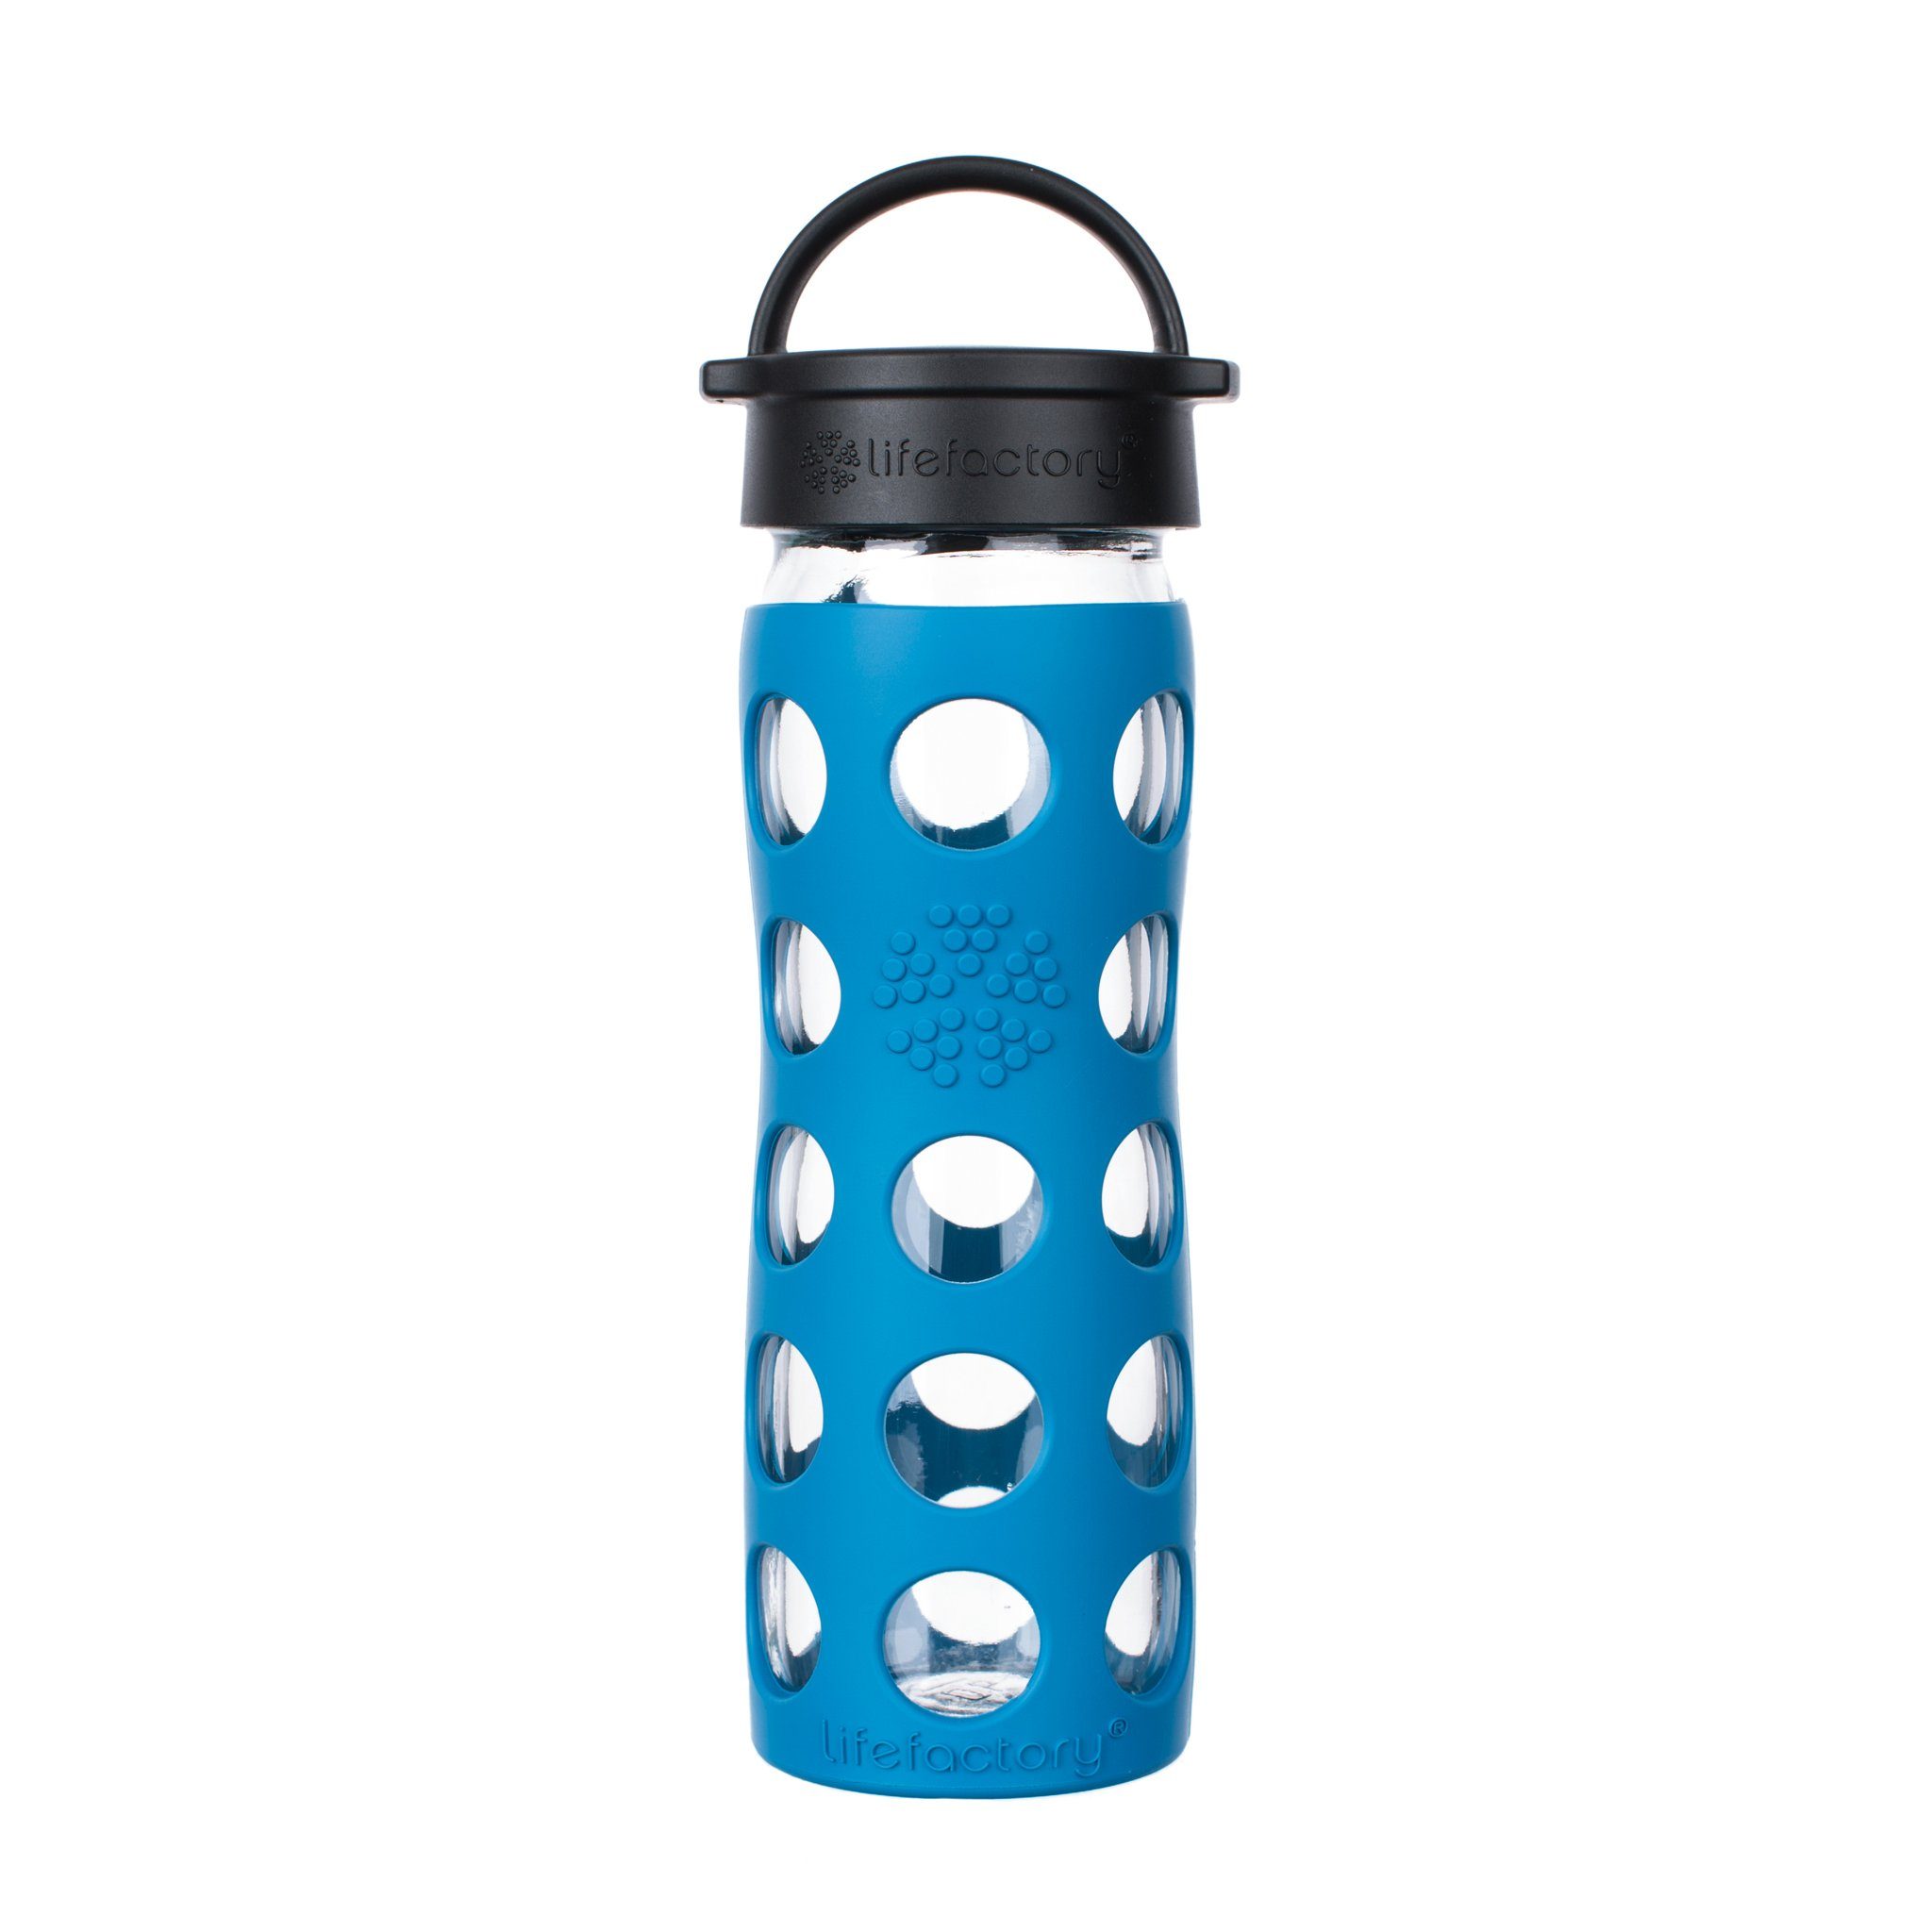 Lifefactory Babyflasche, Lifefactory Glas Flasche mit Silikonhülle und Schraubverschluss, 475ml Teal Lake